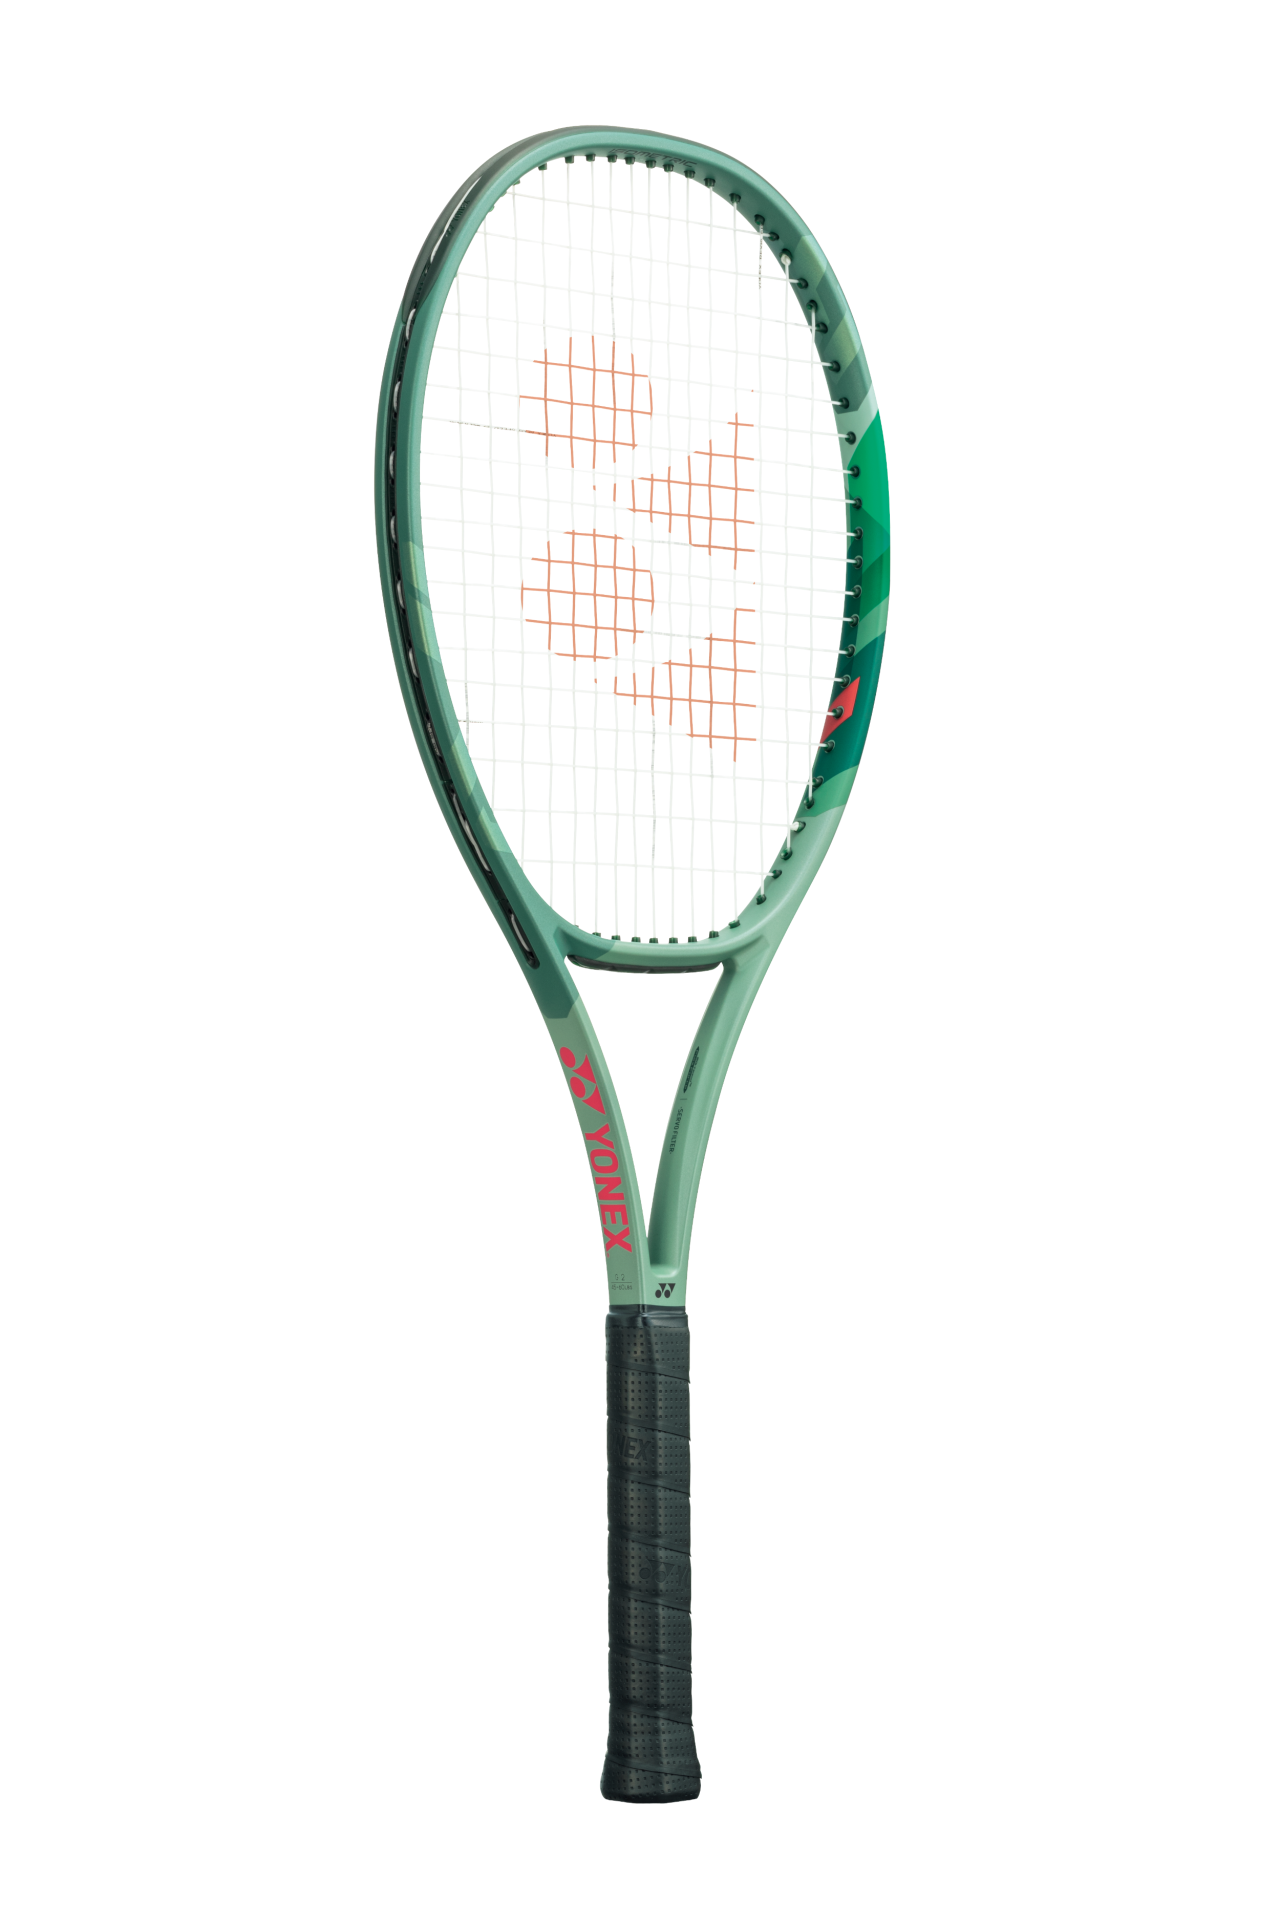 Percept  - 100 | 300g Tenis Raketi - Zeytin Yeşil | Yonex